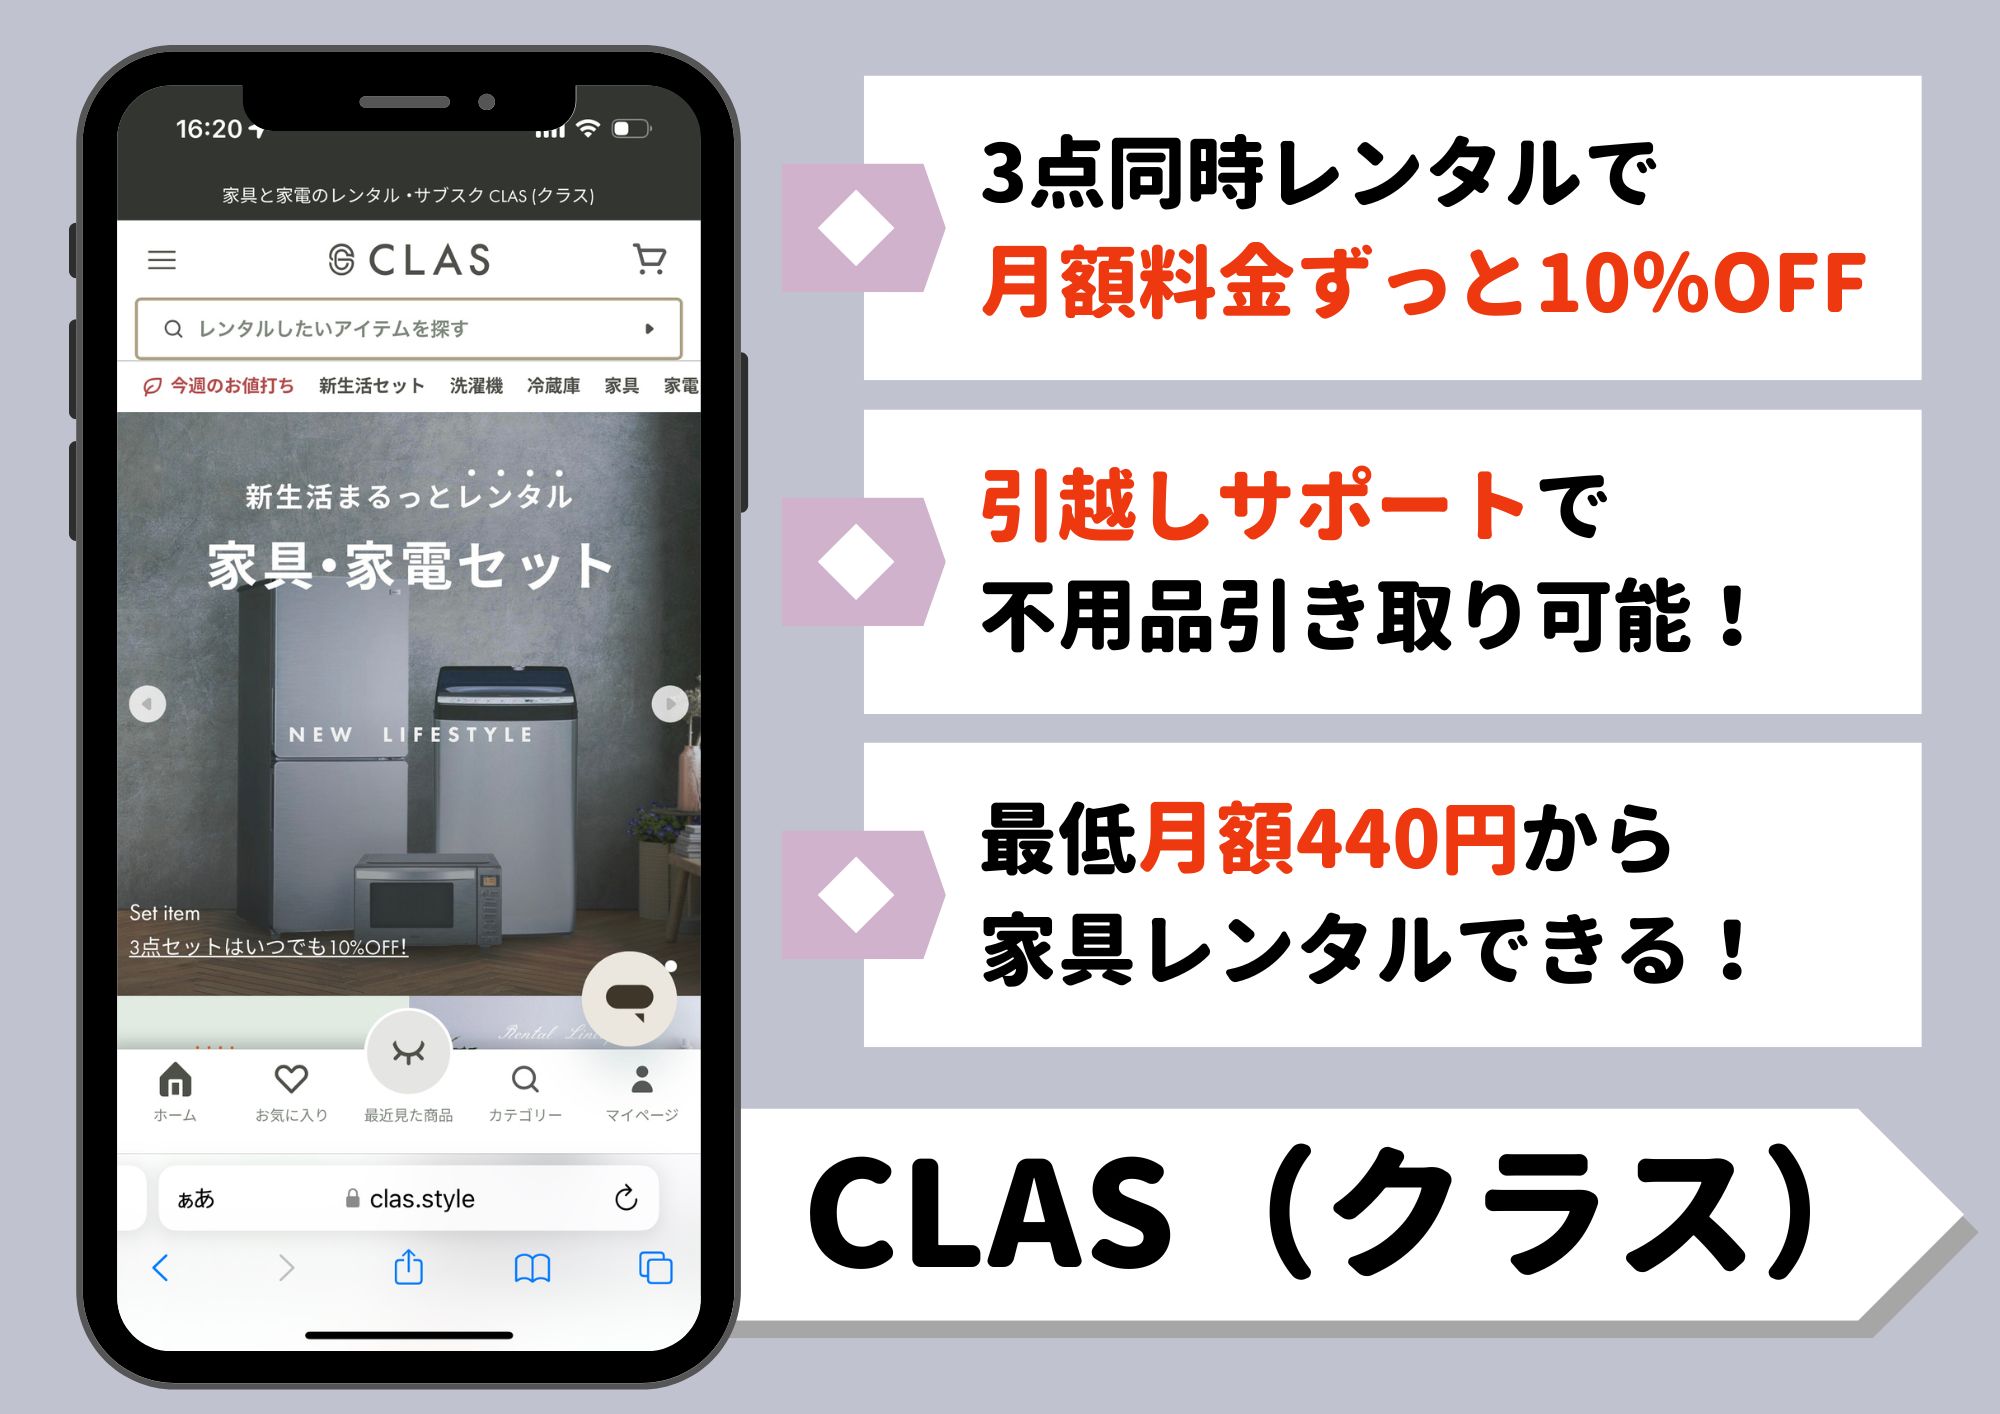 CLAS(クラス) レンタル